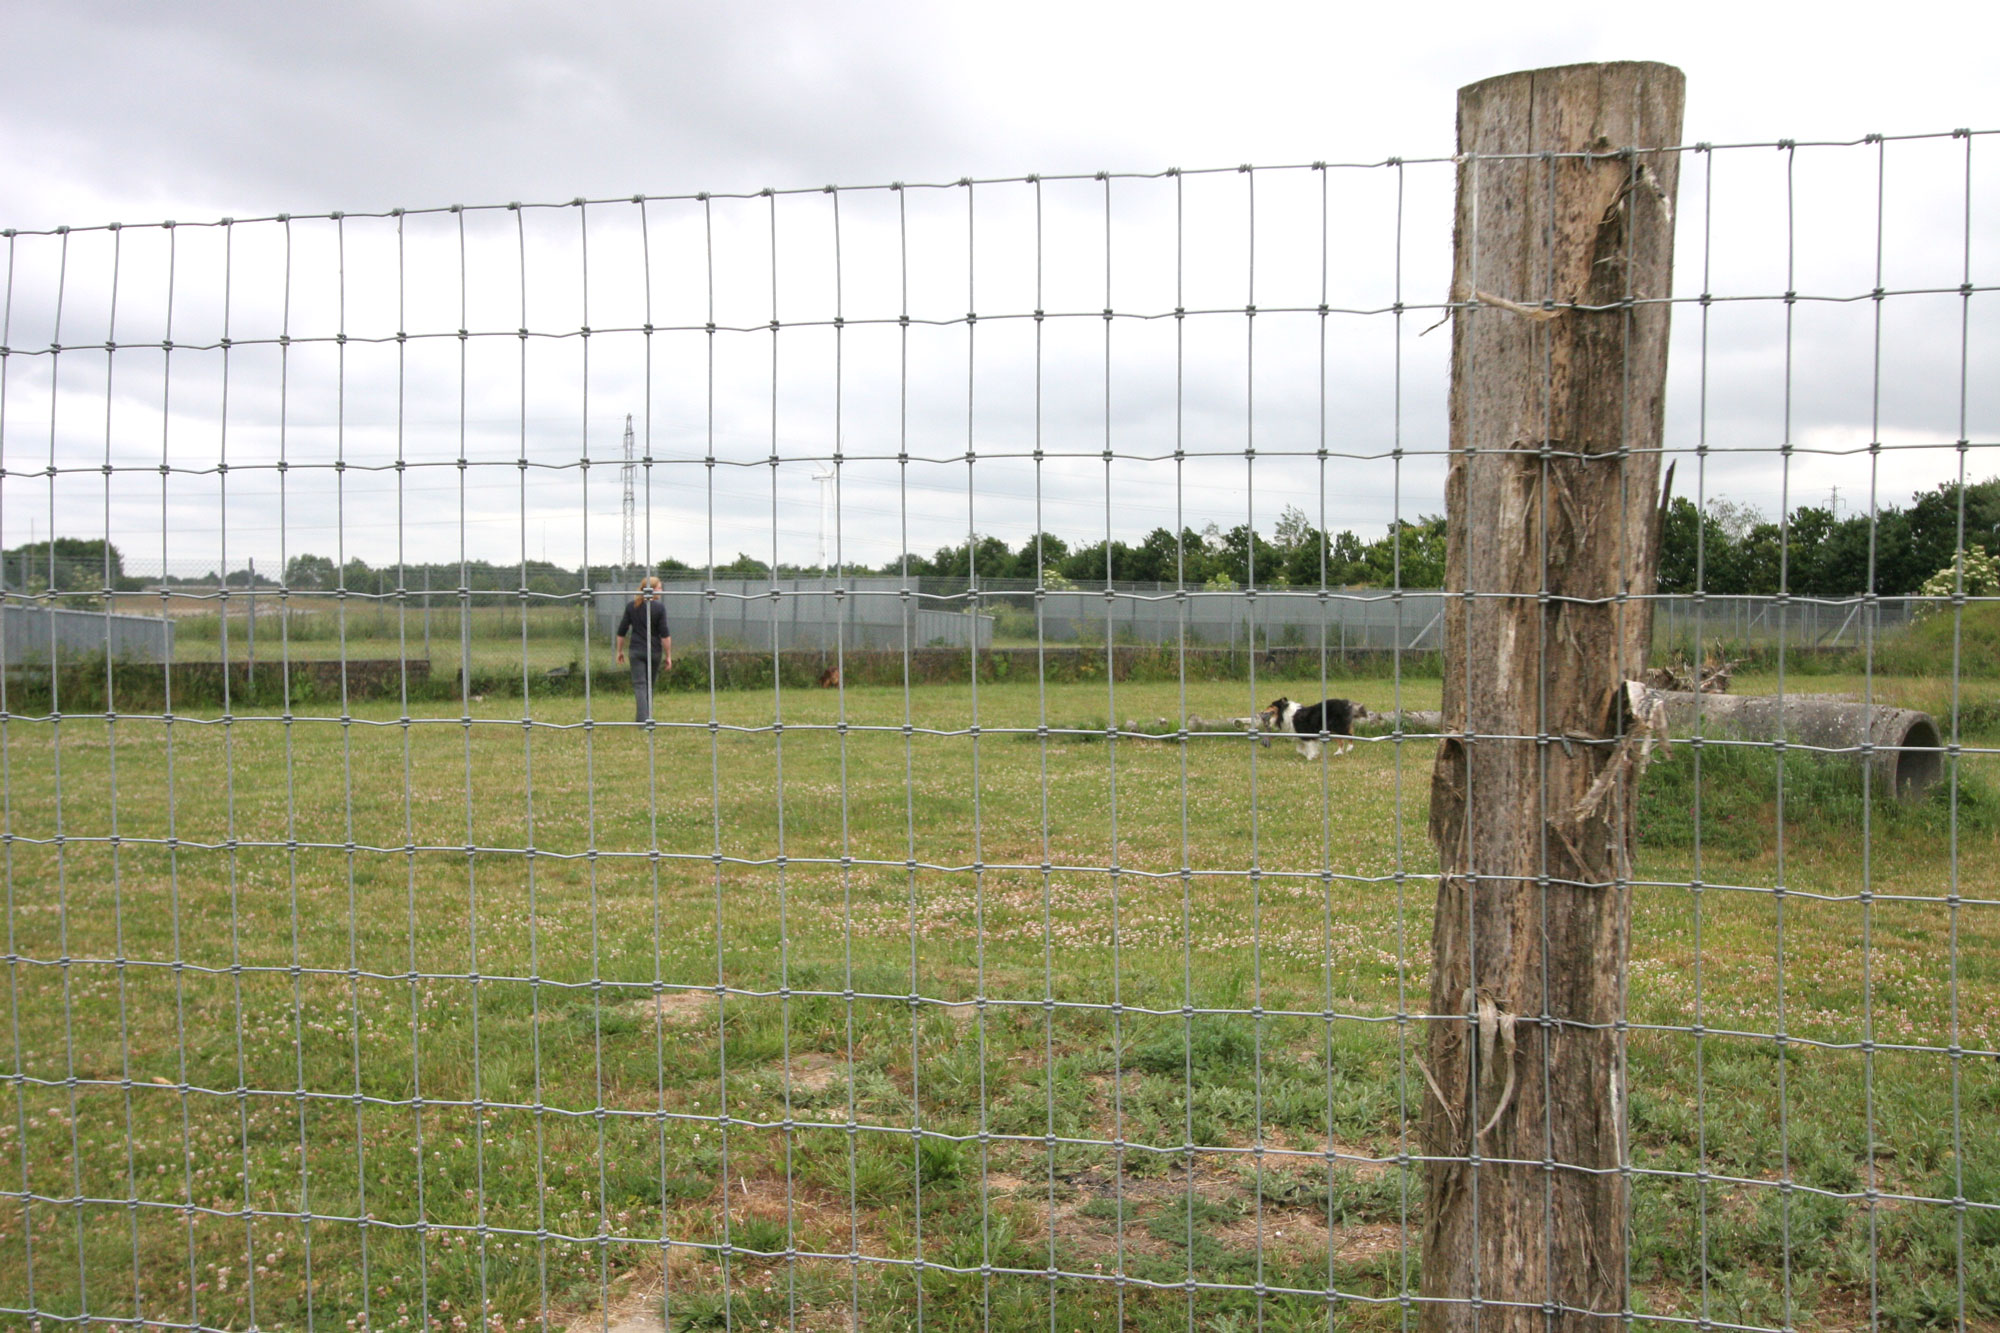 Ett högt staket omgärdar en löpbana där en hund och en person går omkring.